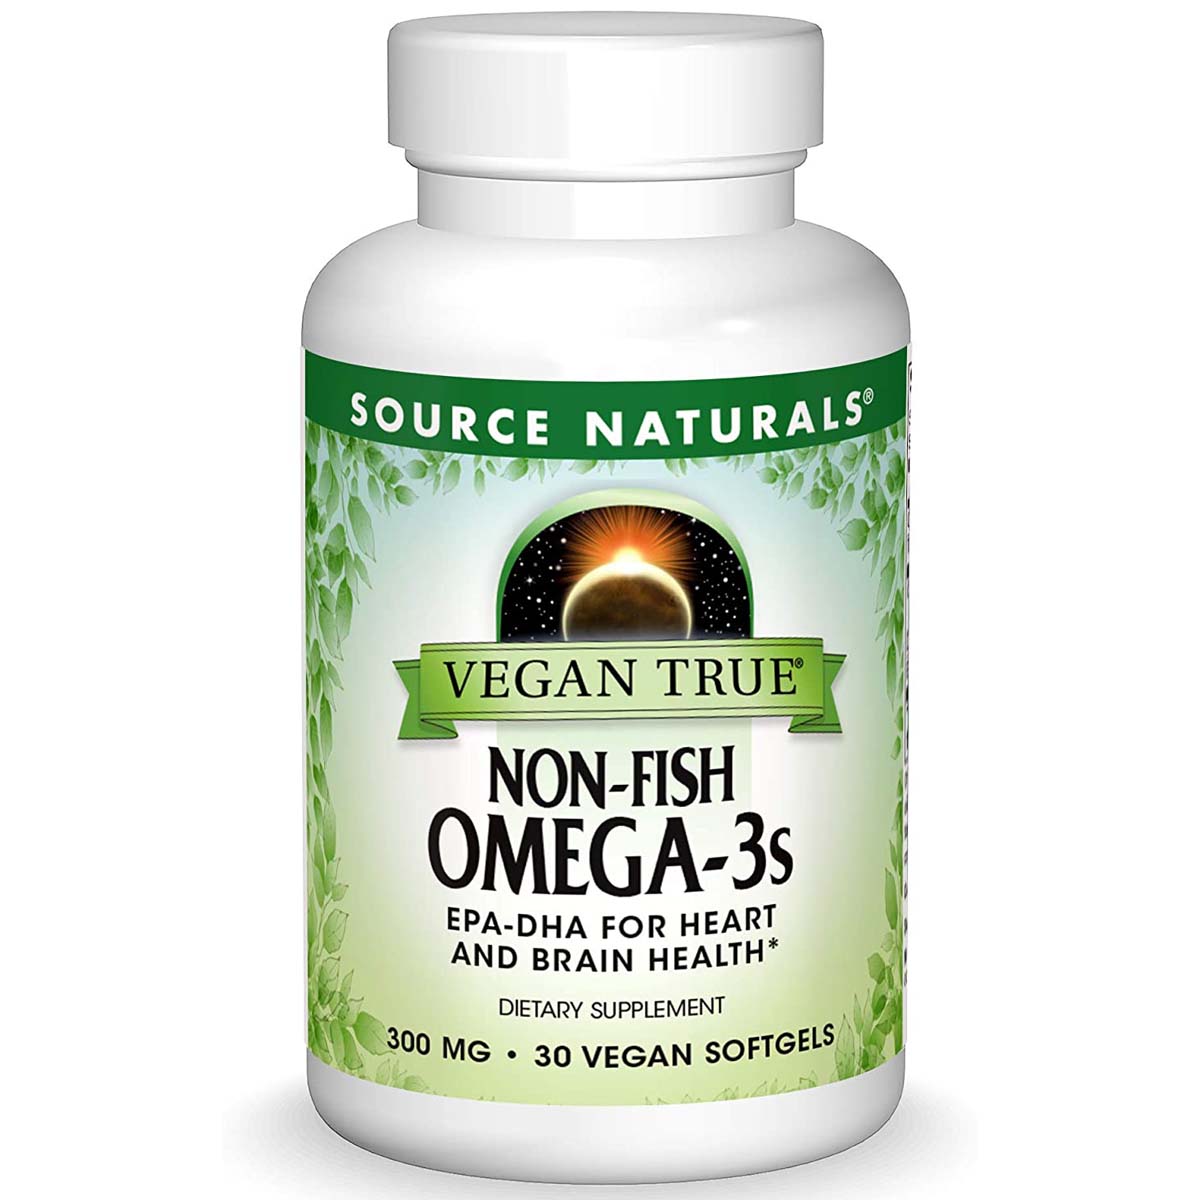 Source Naturals Vegan Omega-3, 300 mg, 30 Vegan Softgels